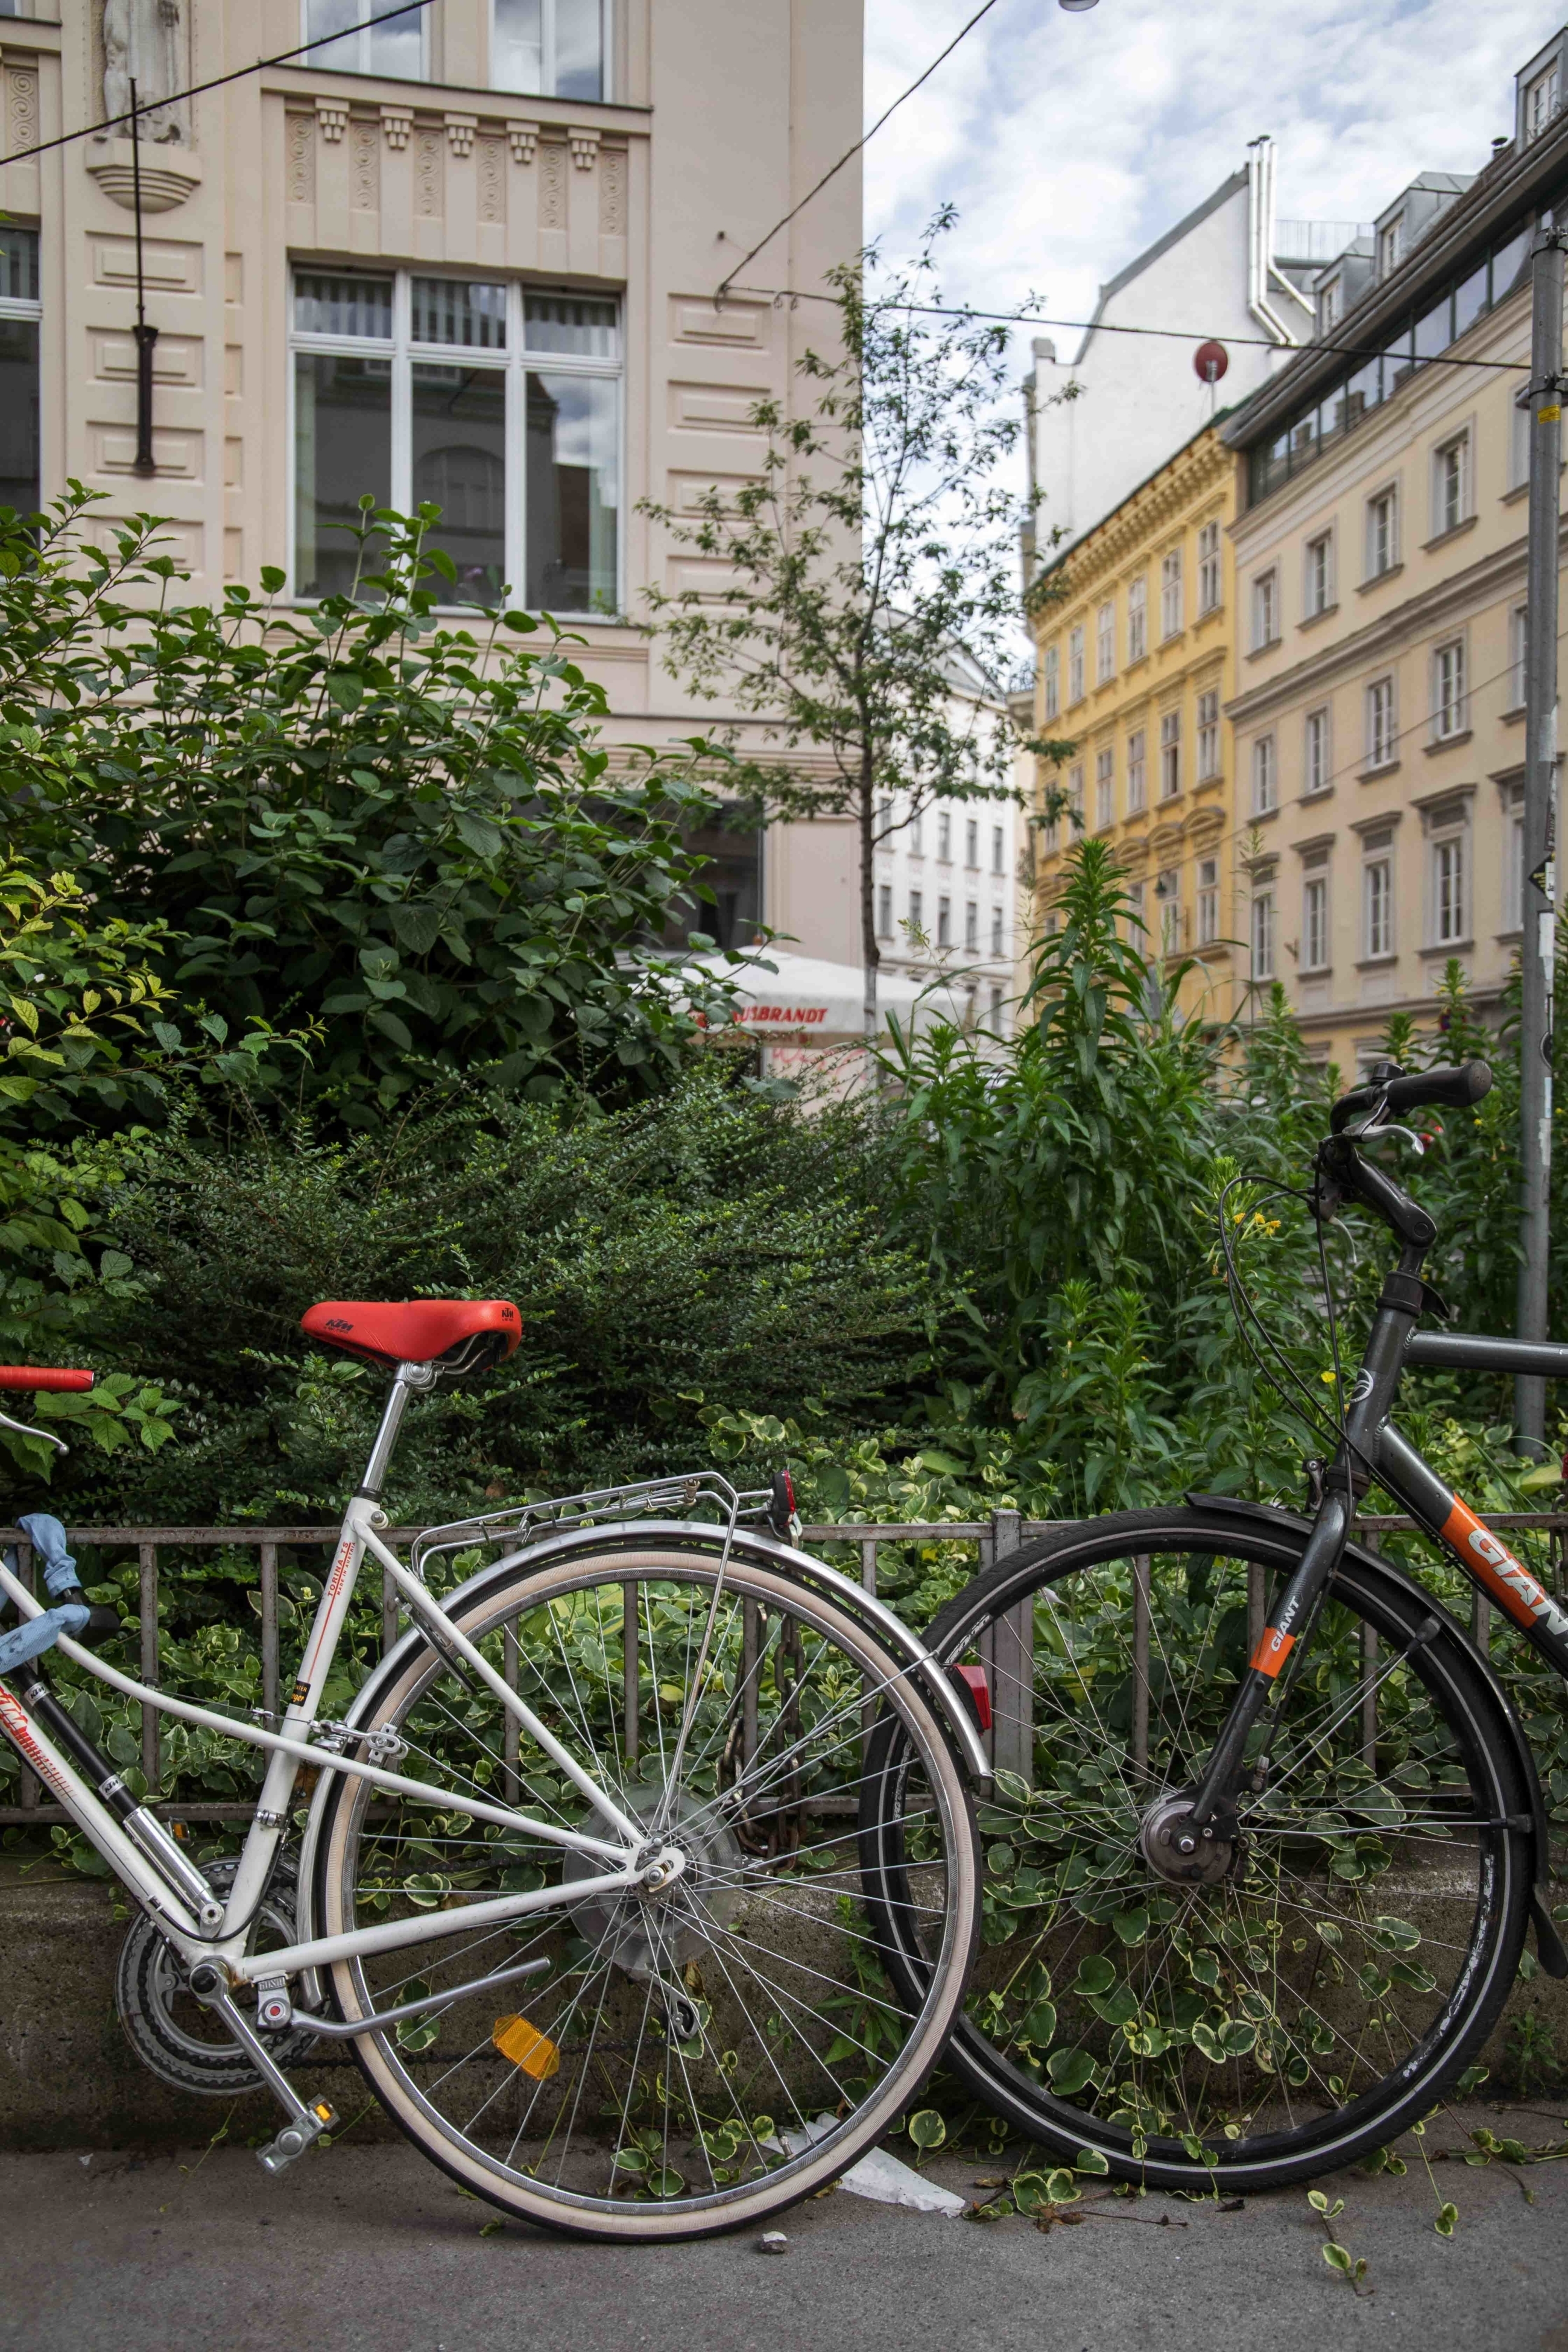 Neubau vienna district bicycle